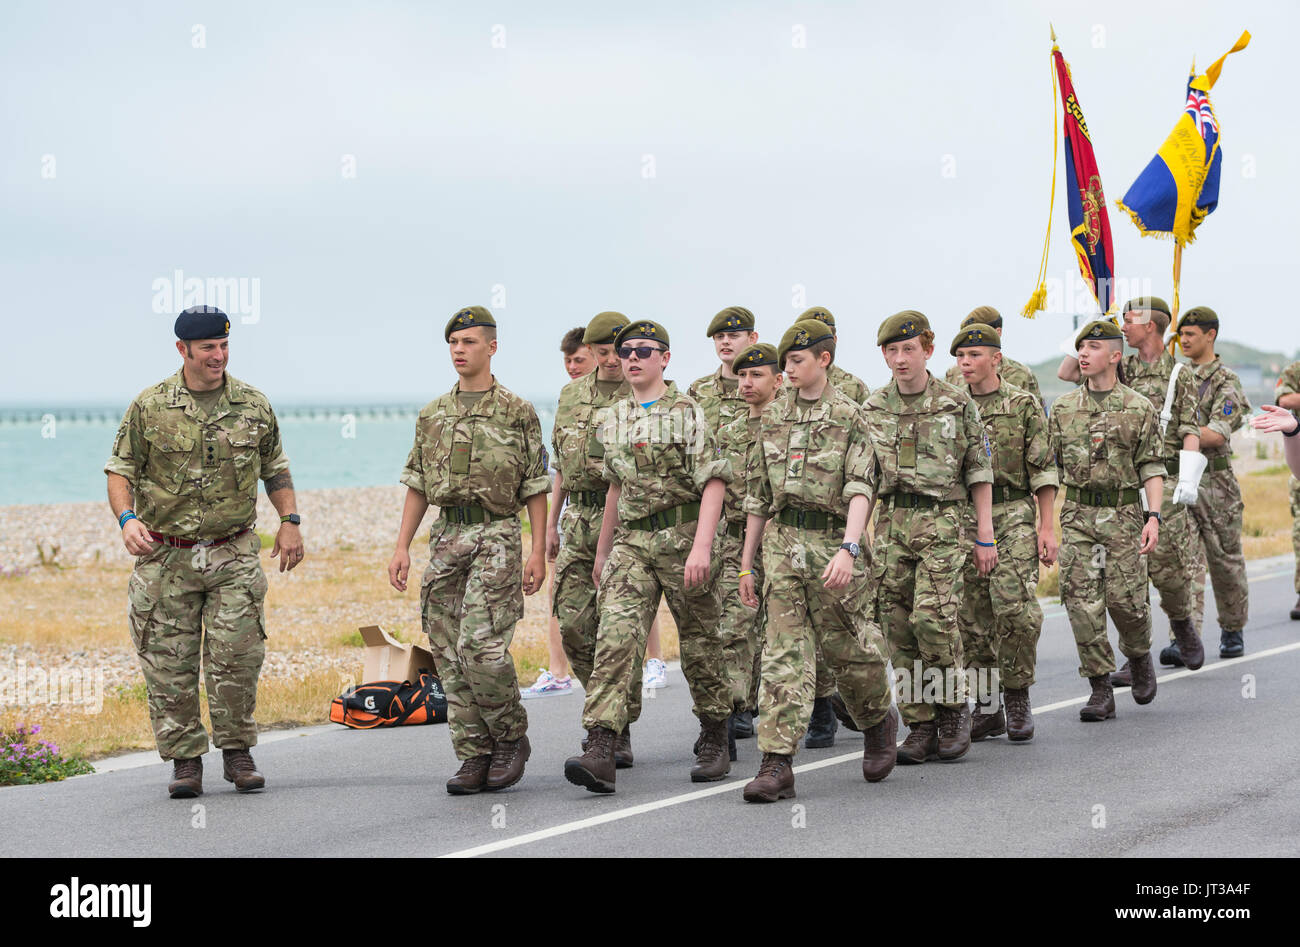 Les cadets de l'armée de la Royal British Legion à Littlehampton marchant à la Journée des Forces armées 2017 événement à Littlehampton, West Sussex, Angleterre, Royaume-Uni. Banque D'Images